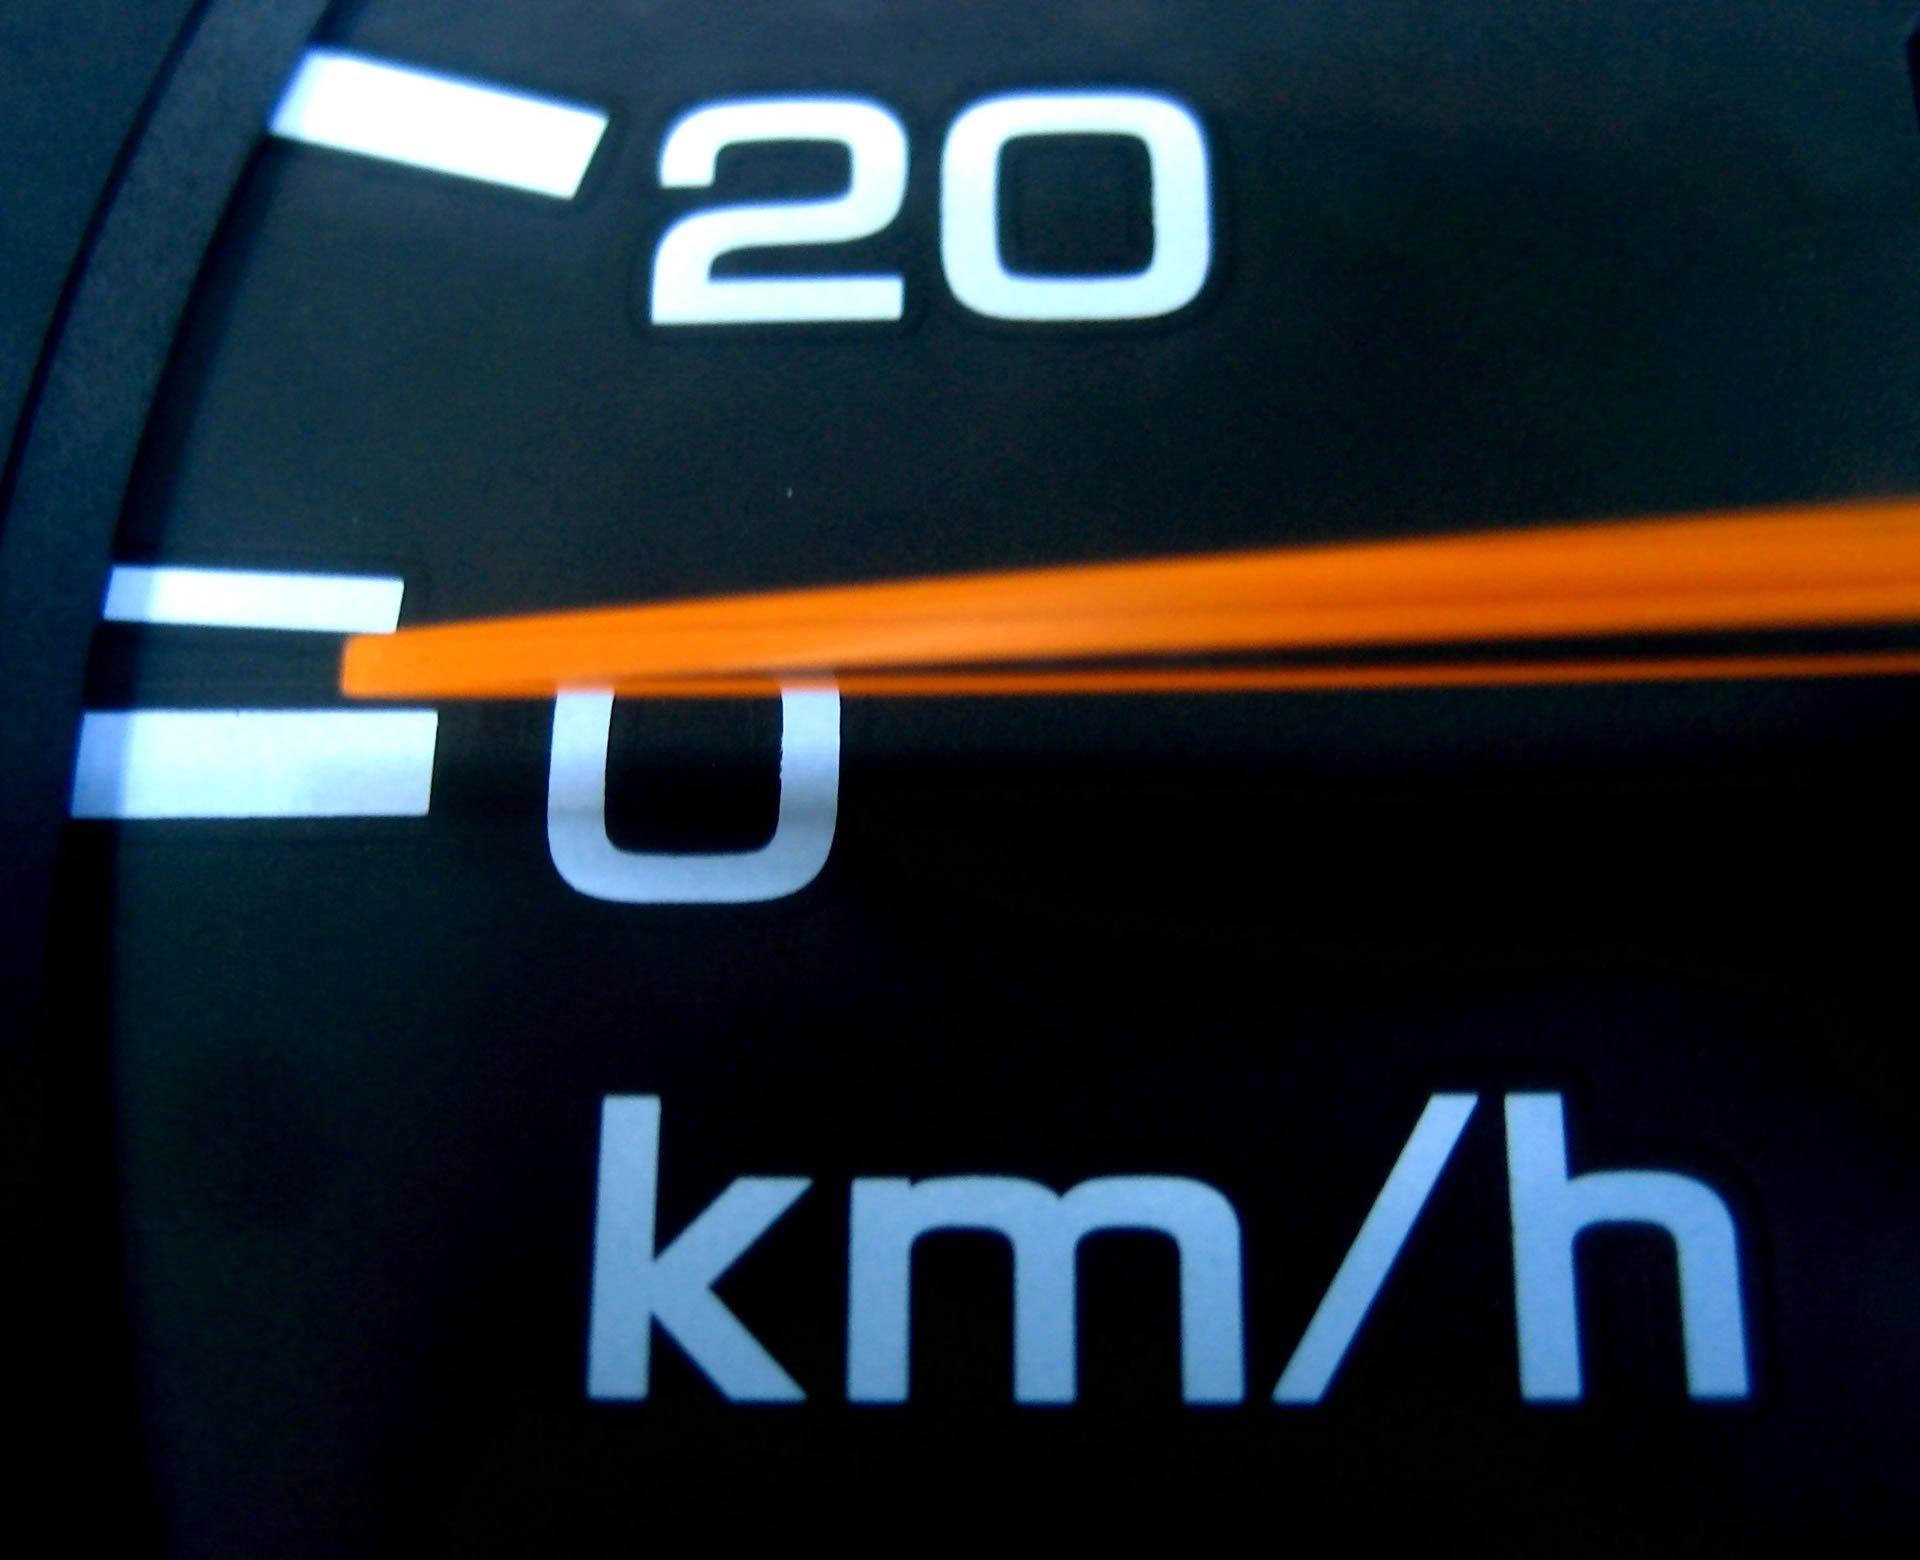 new speed limits of 110 kilometers per hour